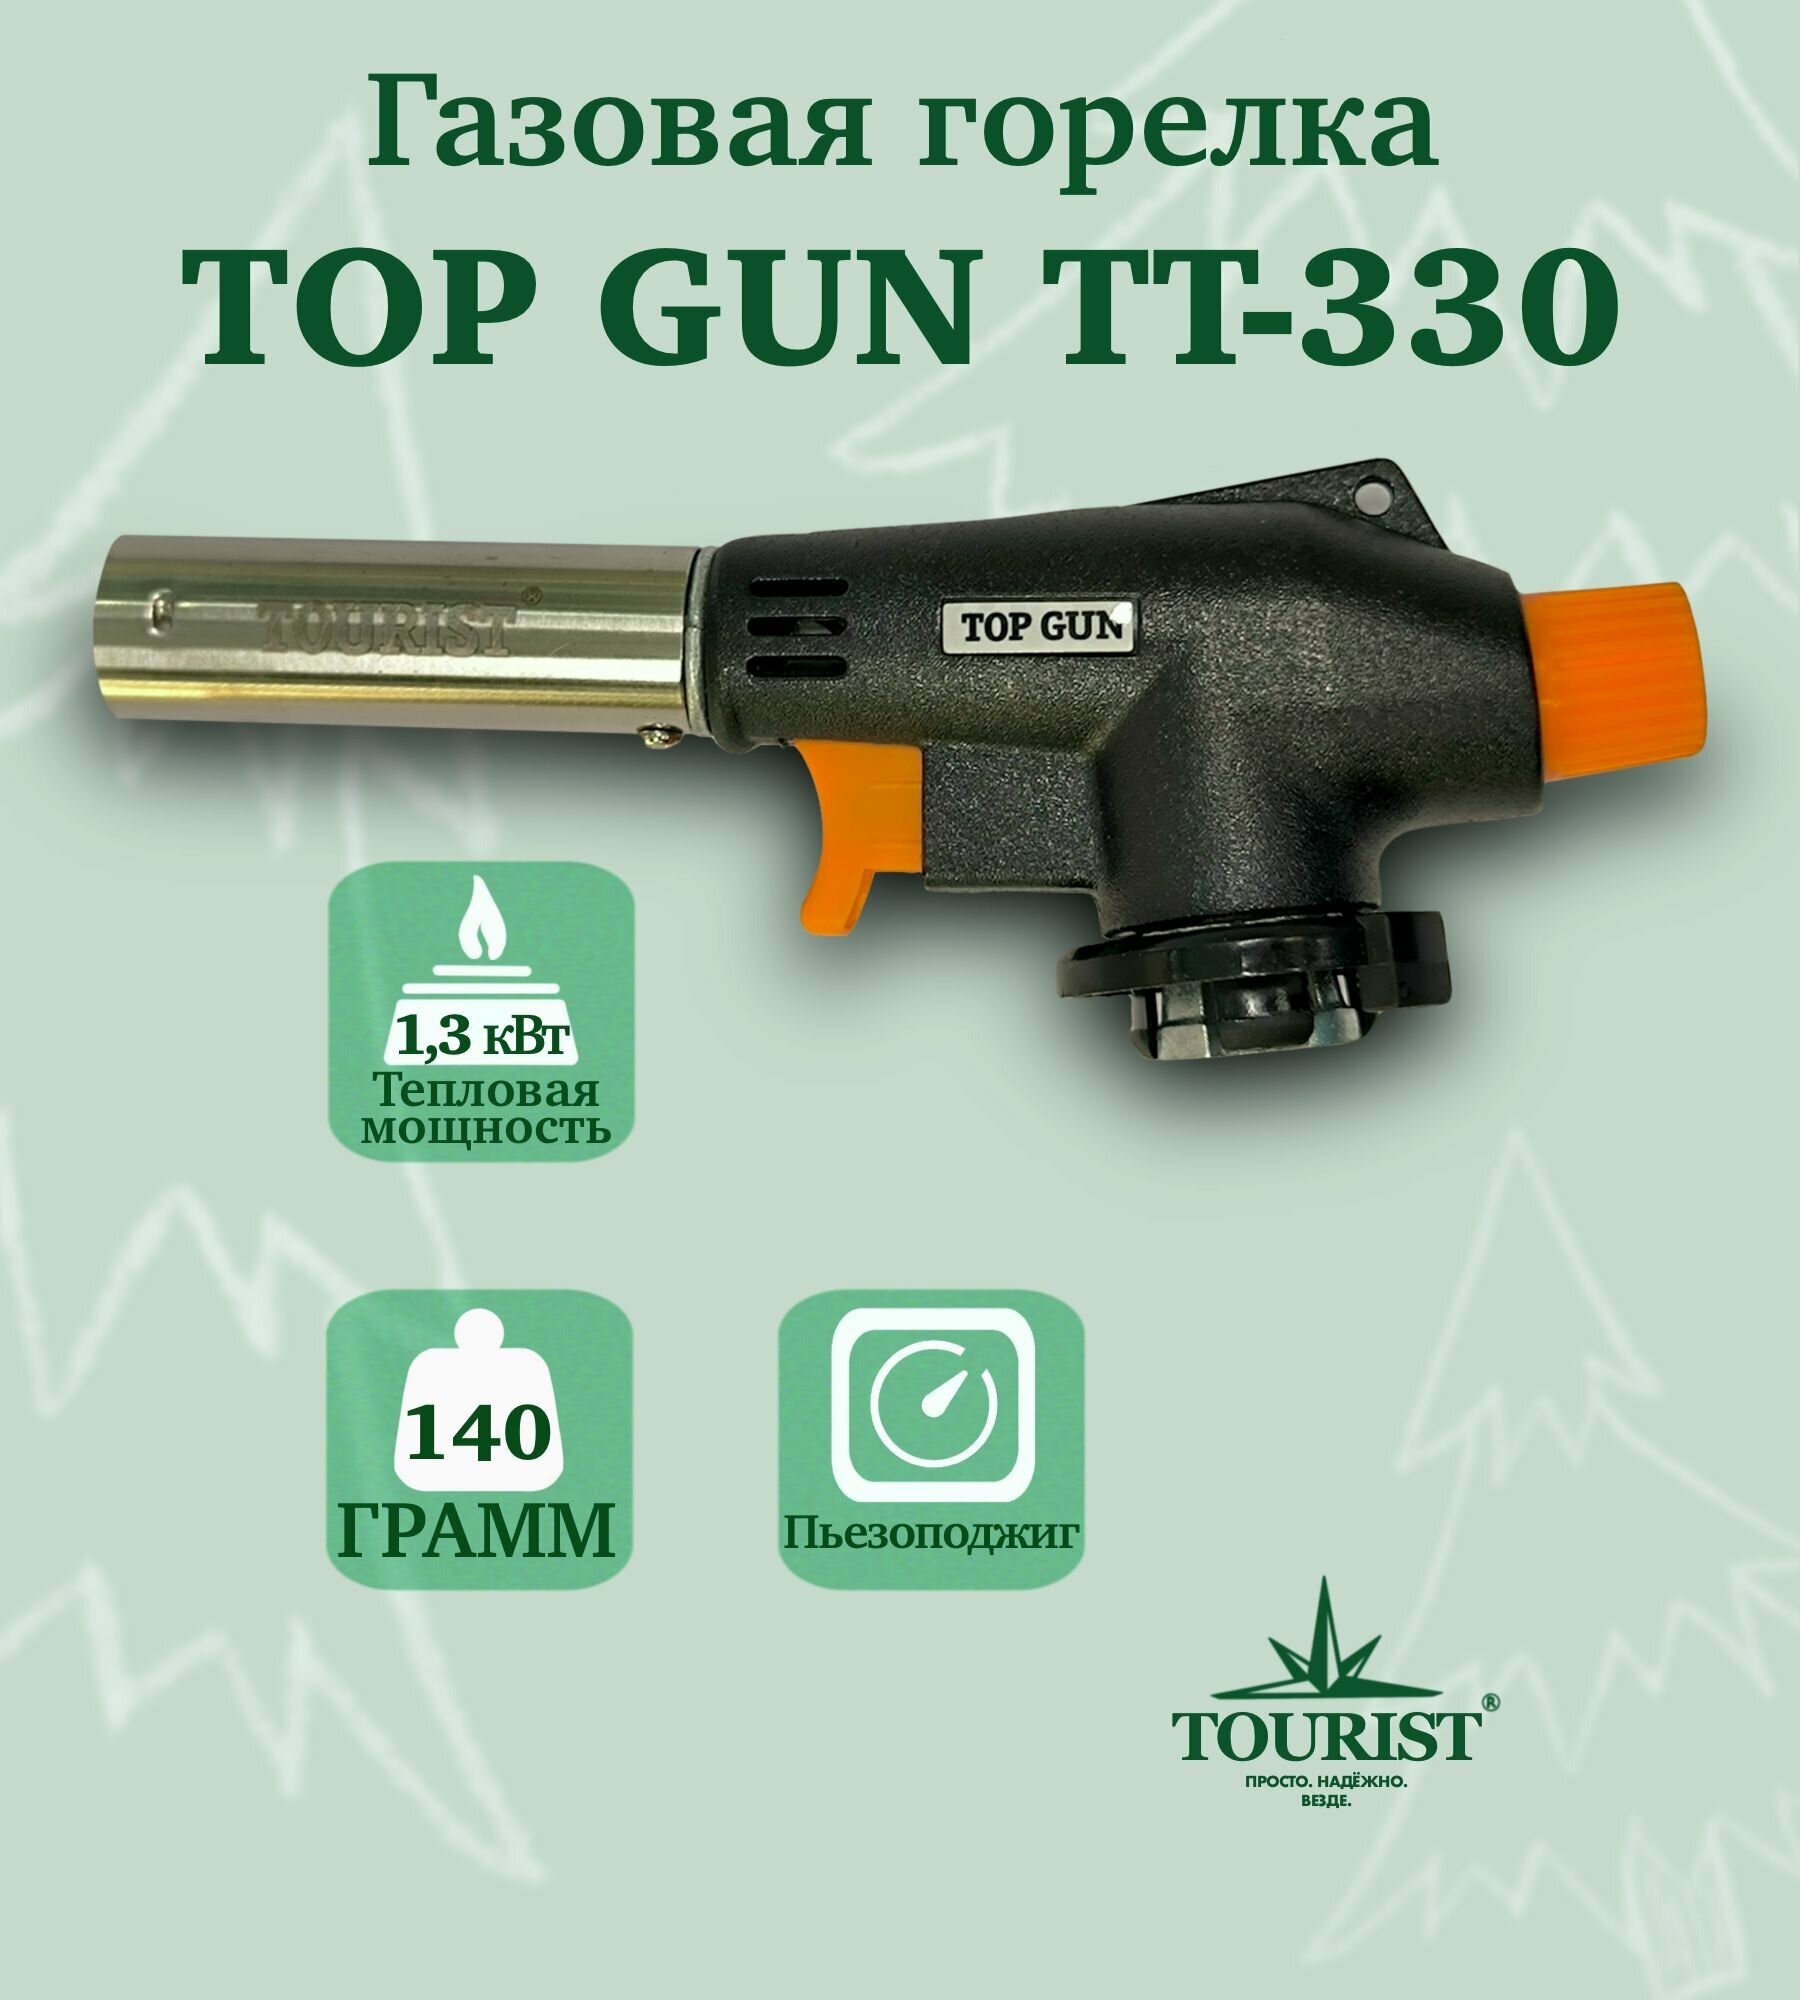 Горелка газовая TOURIST TOP GUN TT-330